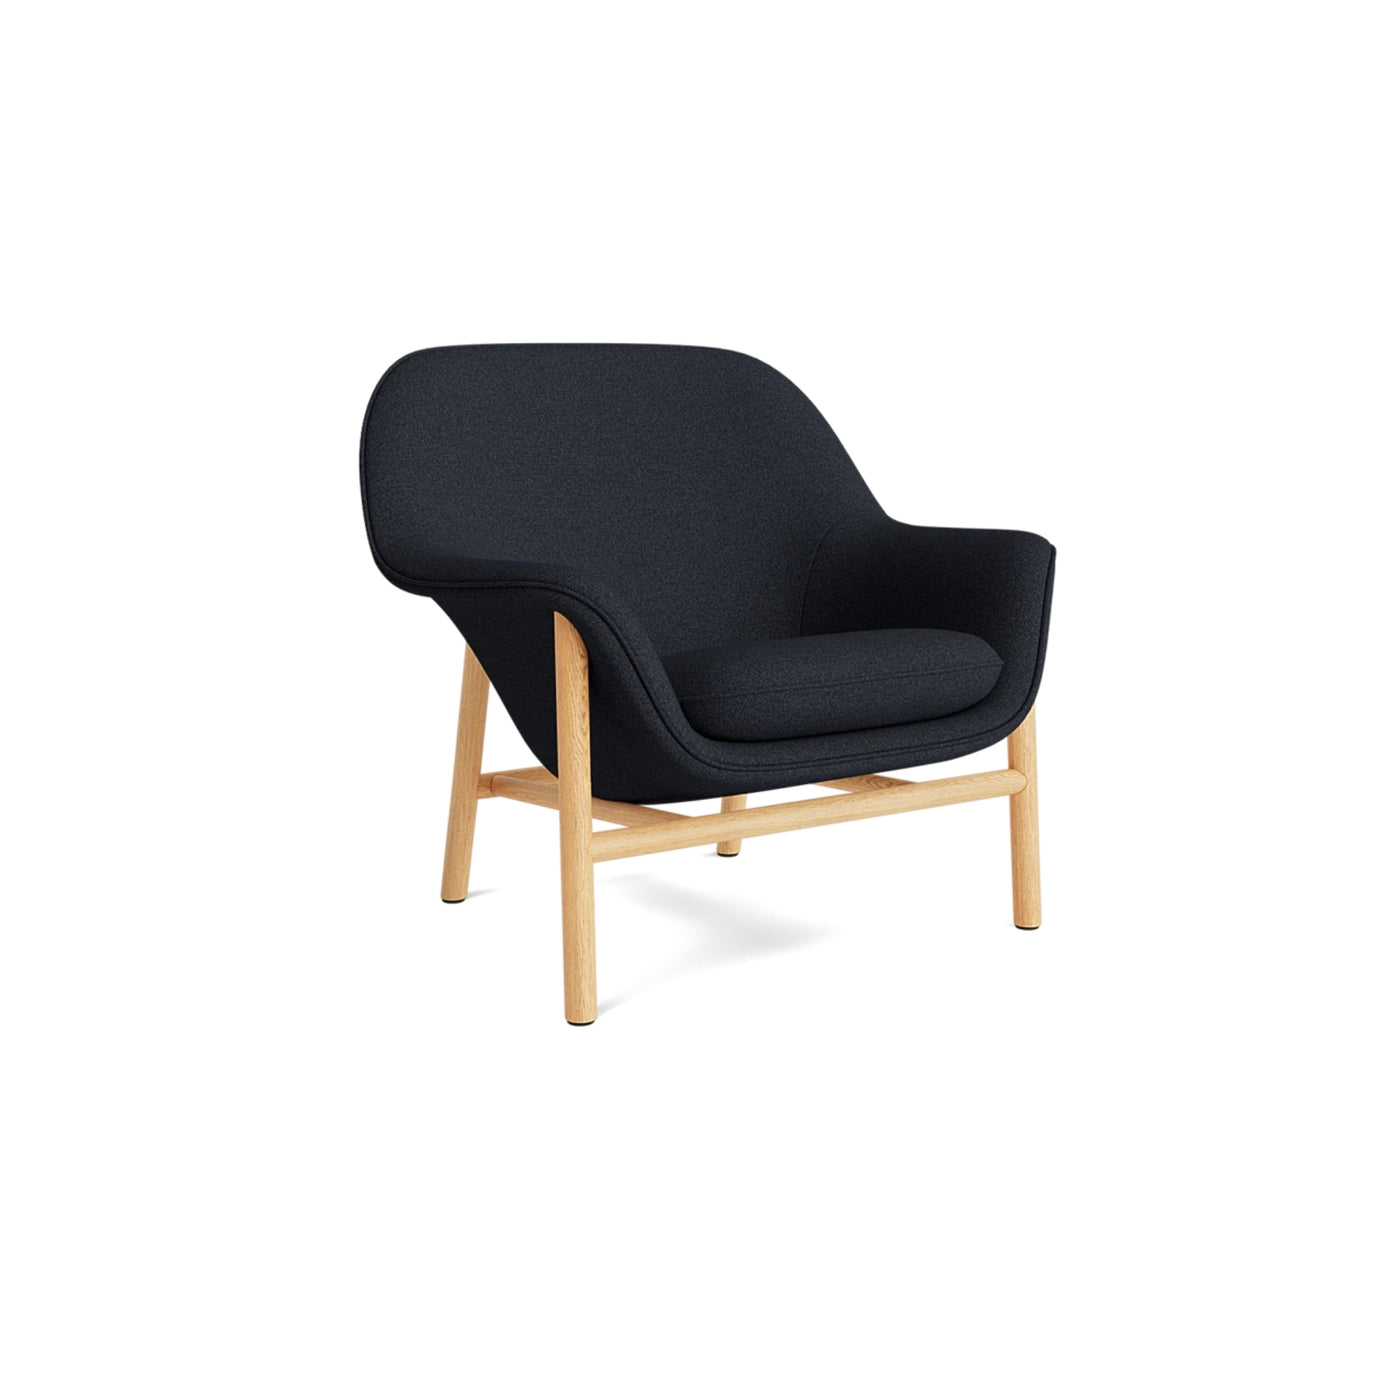 Normann Copenhagen Drape Lounge Chair at someday designs. #colour_hallingdal-180